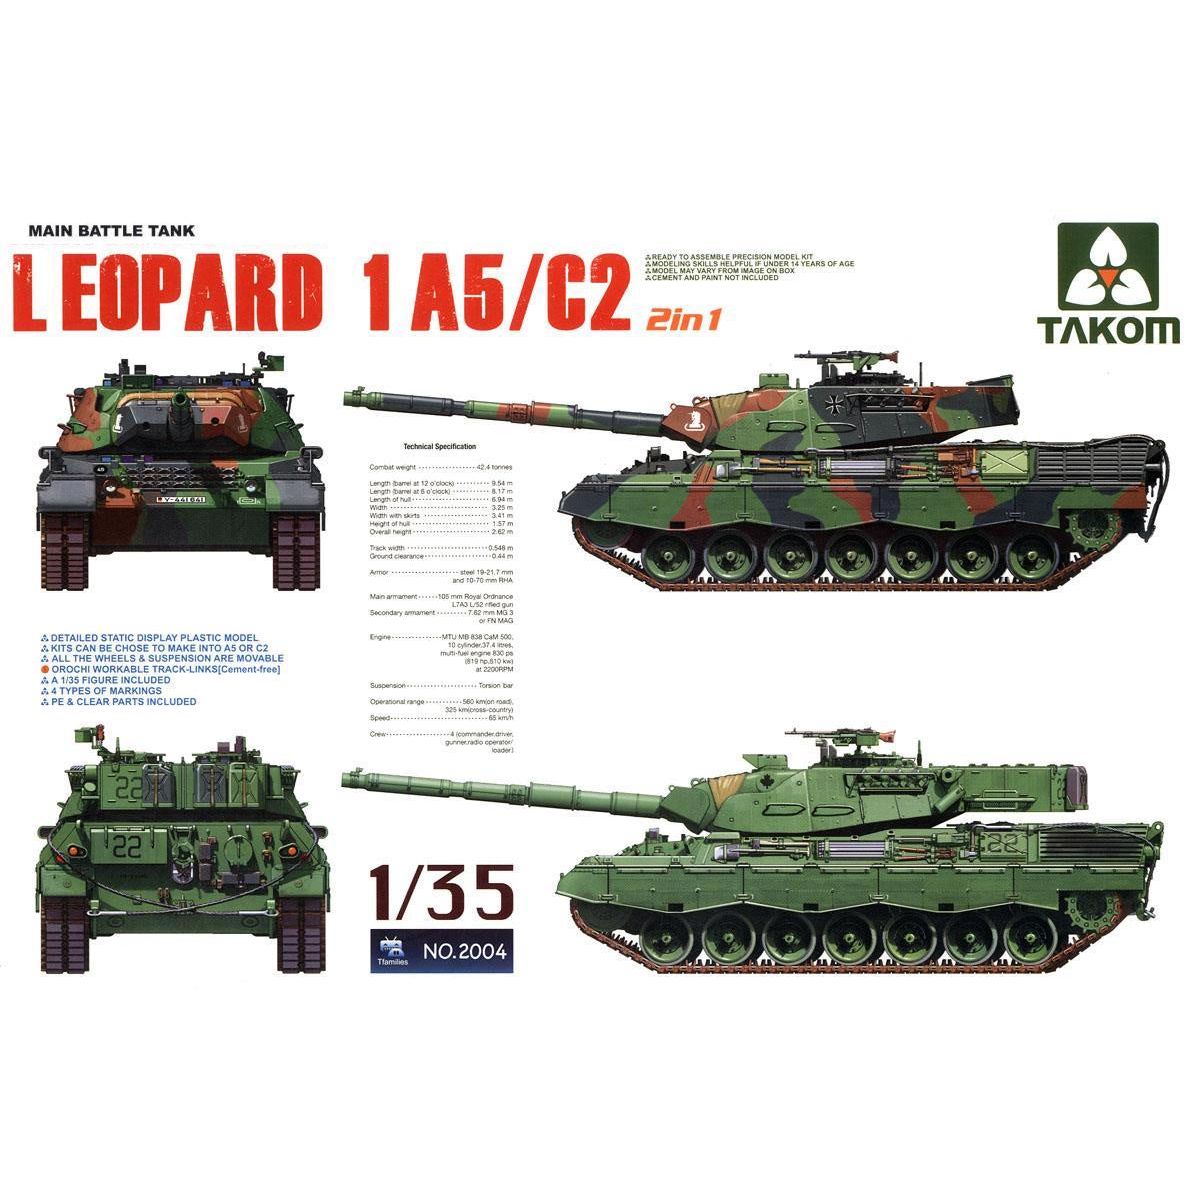 Main Battle Tank Leopard 1 A5/C2 (2 in 1) 1/35 #2004 by Takom